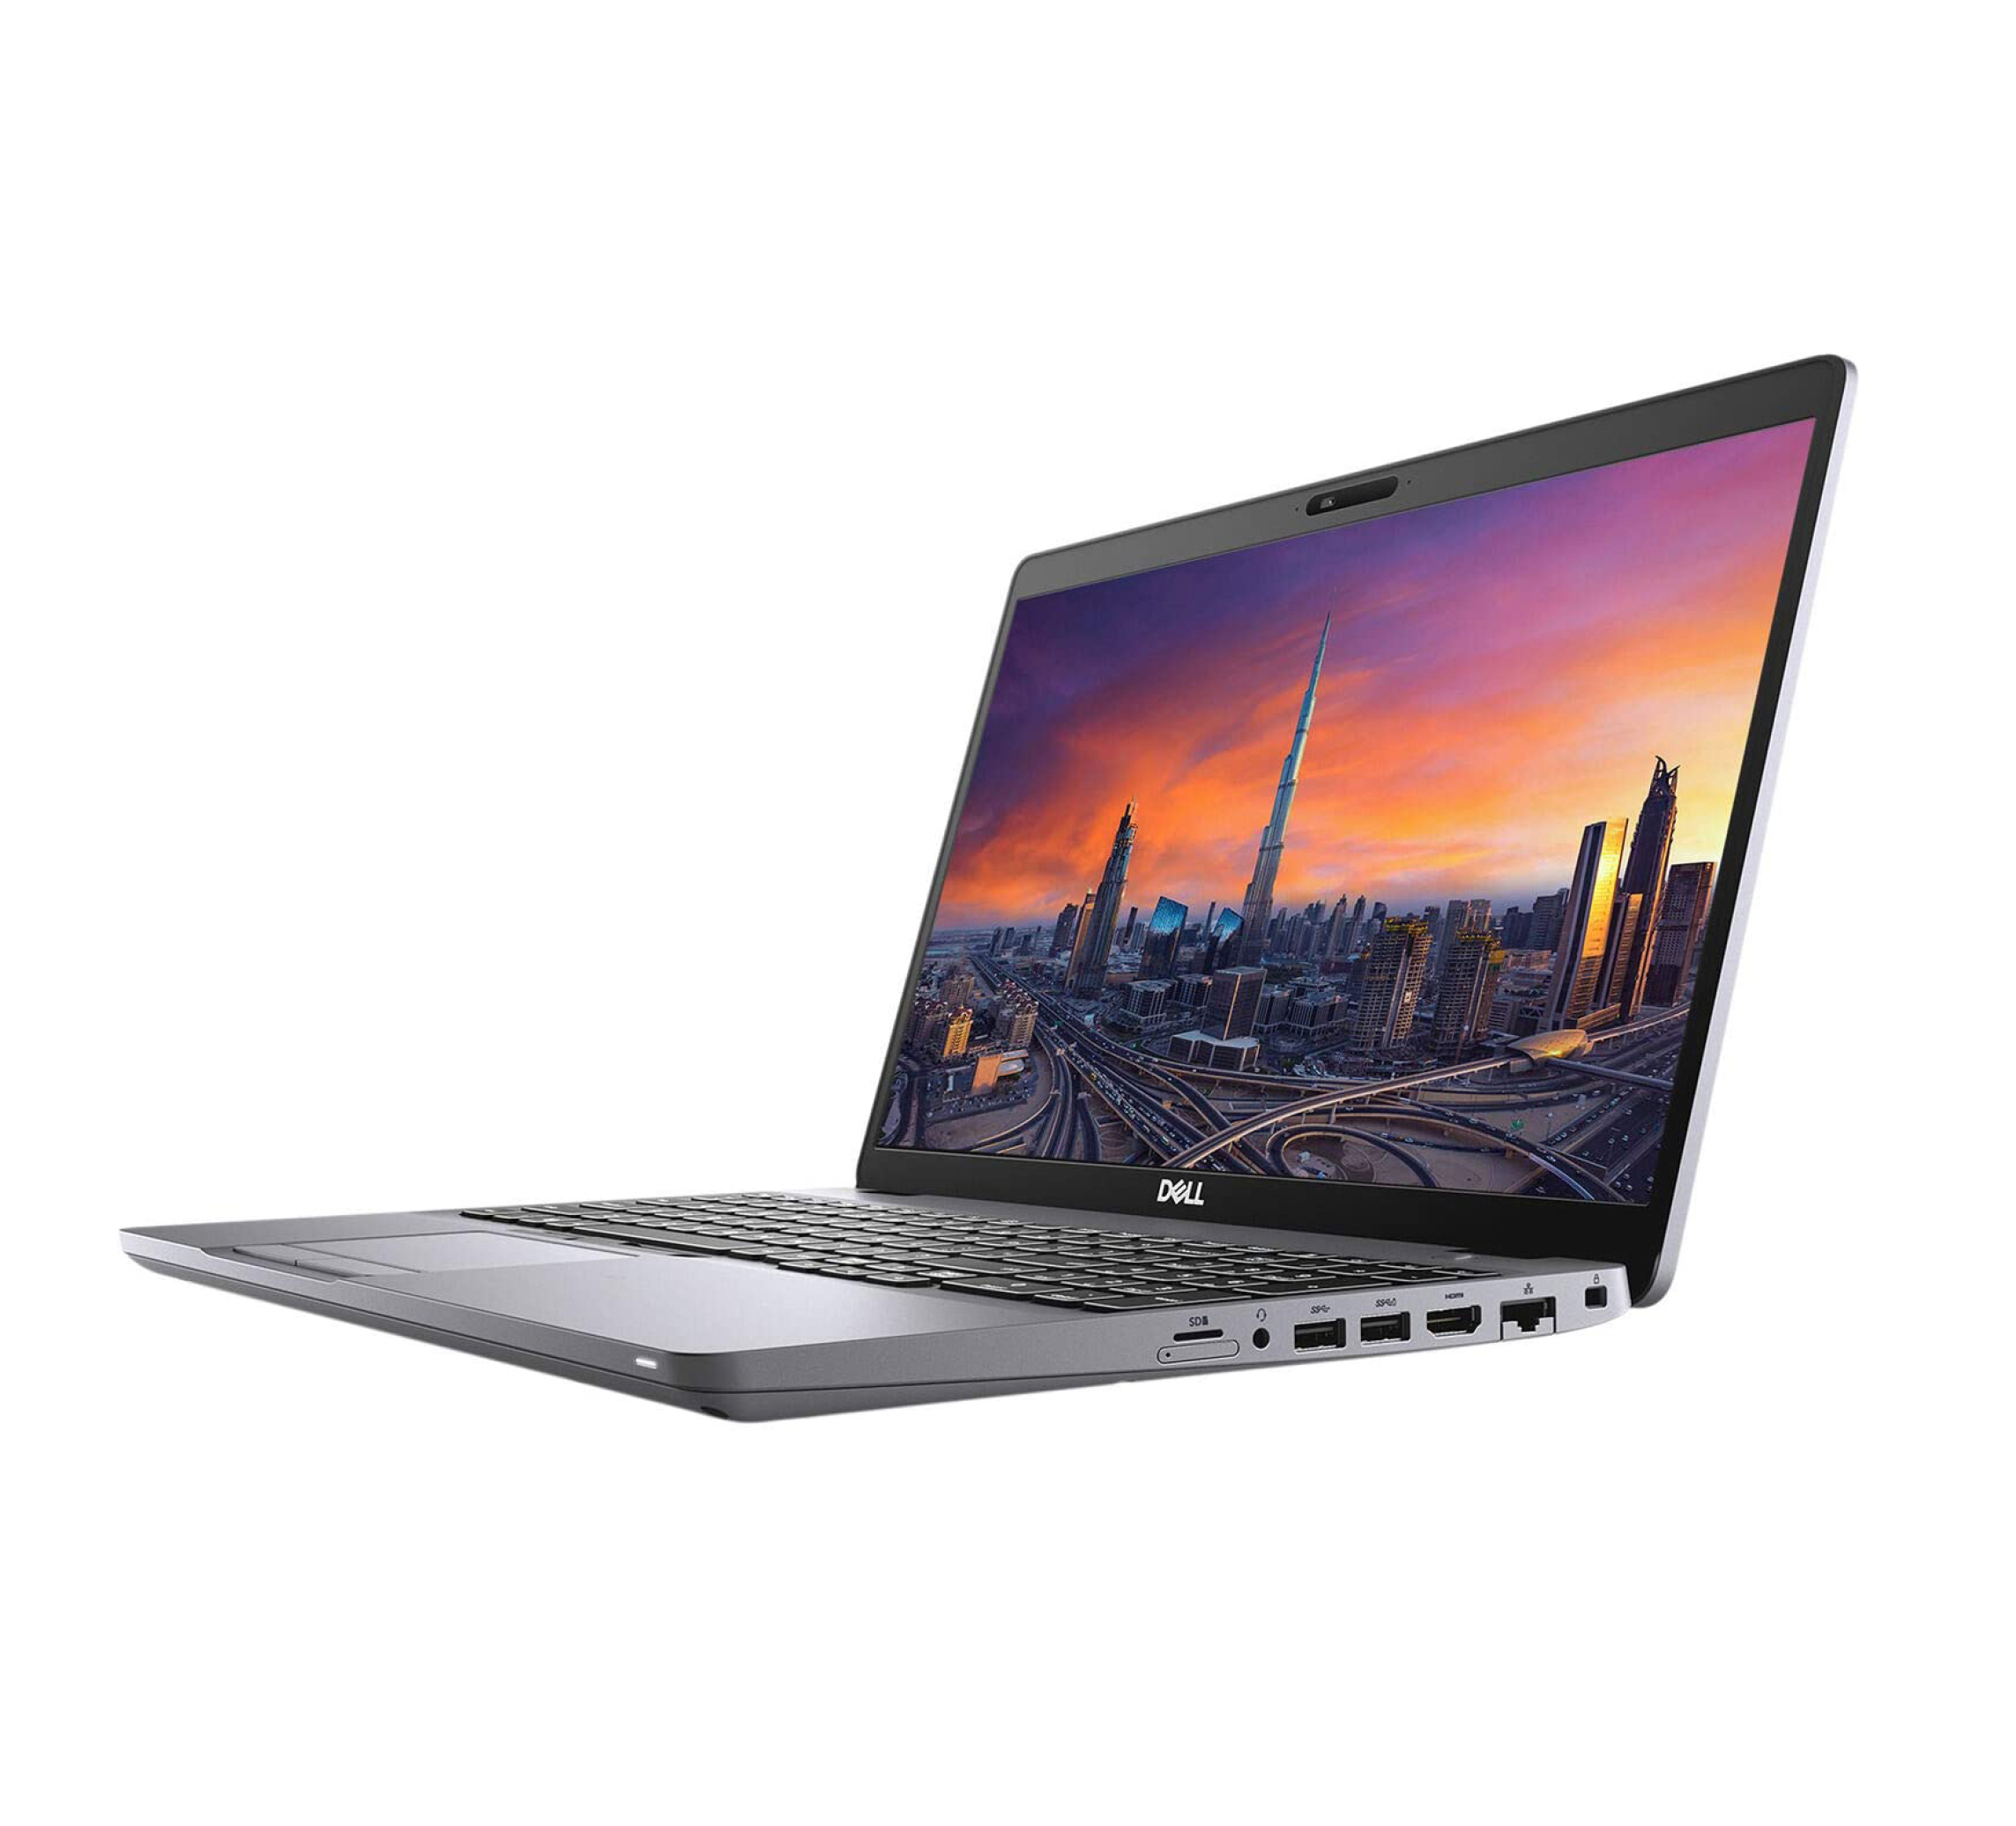  خرید،قیمت و مشخصات فنی لپ تاپ Dell Precision 3551 | لاکچری لپ تاپ 